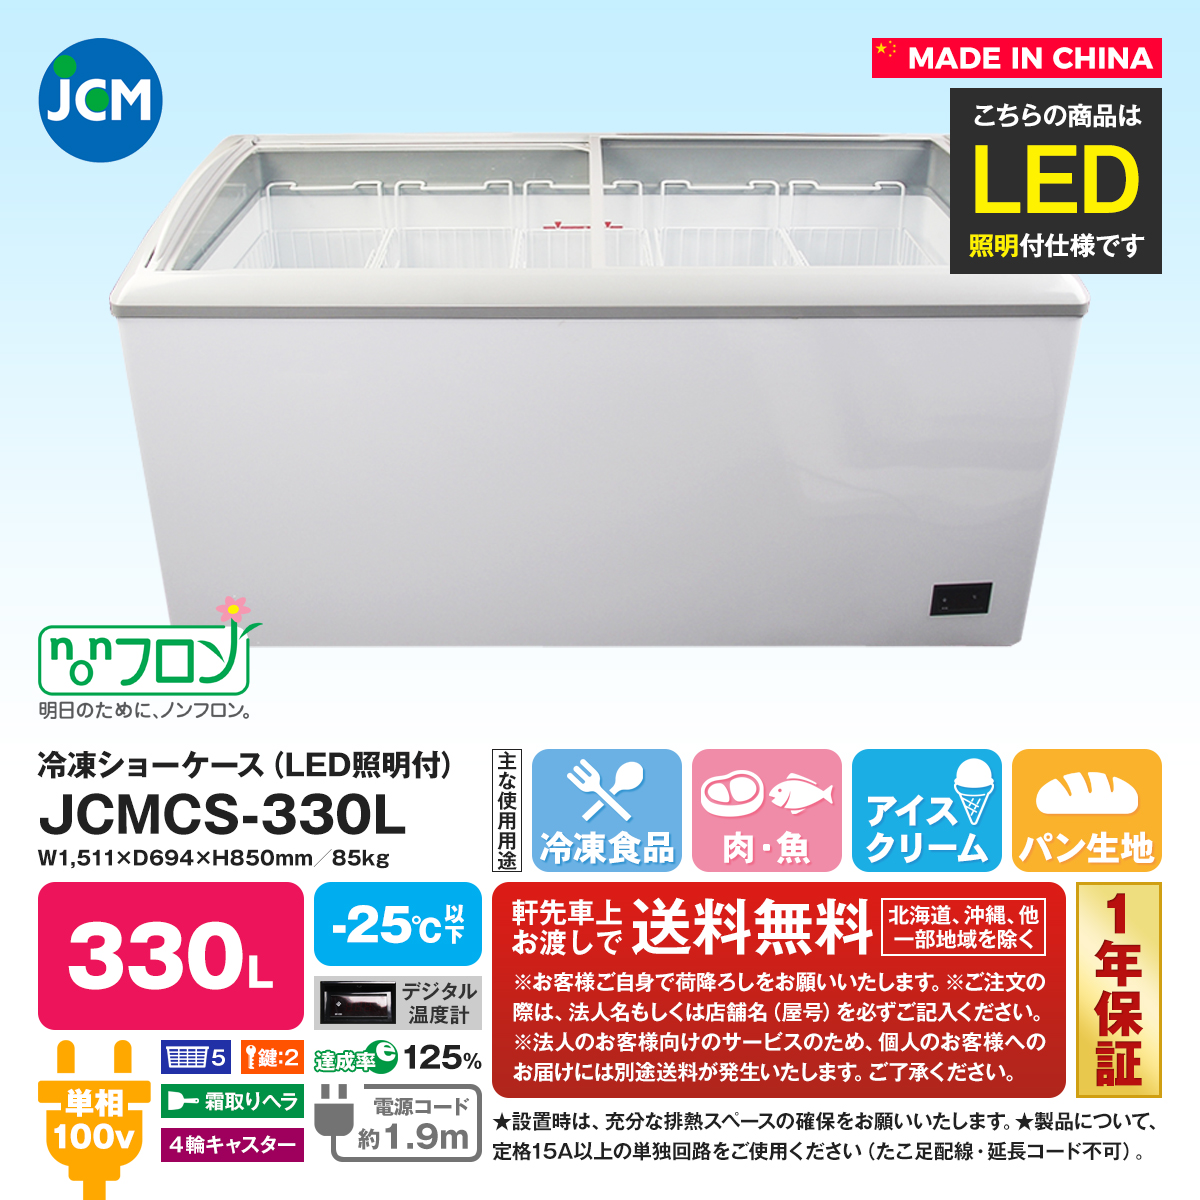 【誠実】 新品未使用品 冷凍ショーケース LED照明付 ラウンド型 JCMCS-330L